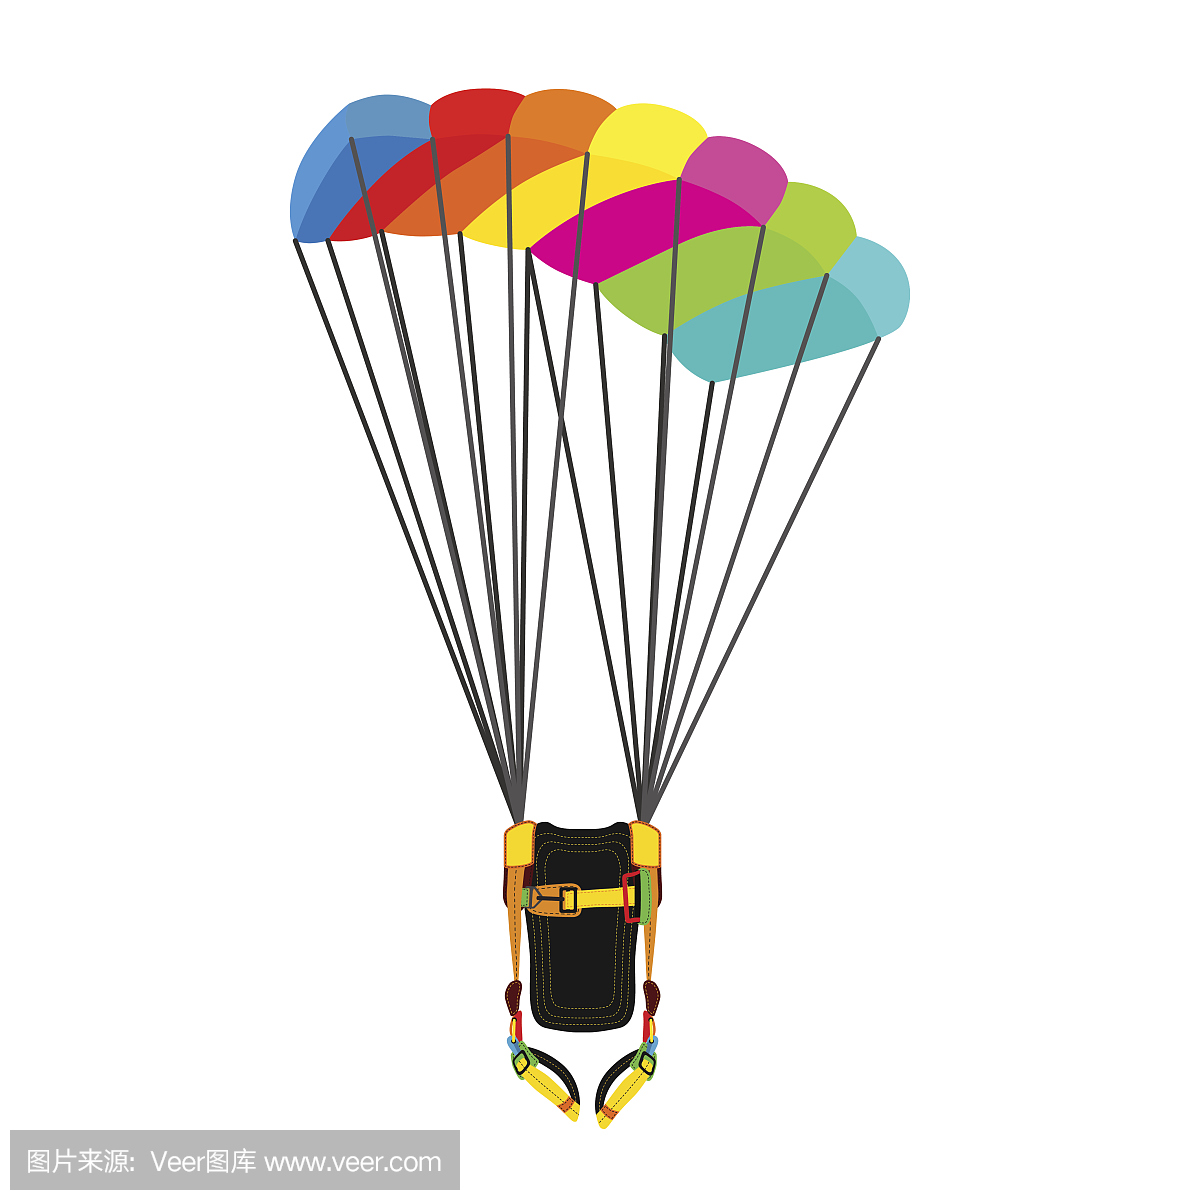 降落伞包,打开降落伞。跳伞明亮极限运动器材